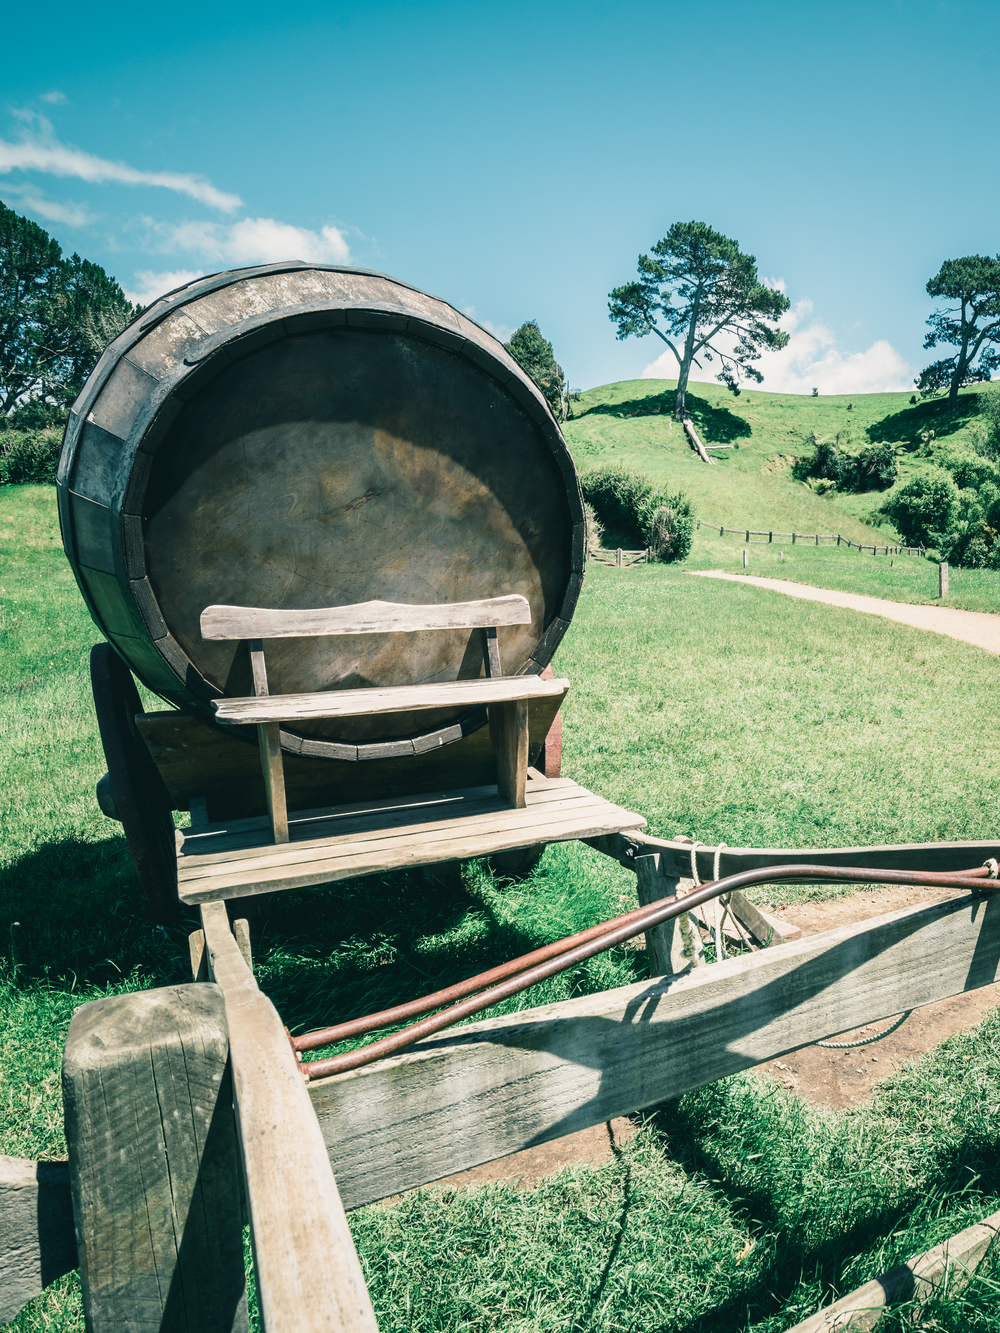 葡萄酒桶的葡萄酒样式图象在推车的反对绿草领域在乡下农业风景背景中有机食品酿酒厂和酒精饮料产品行业